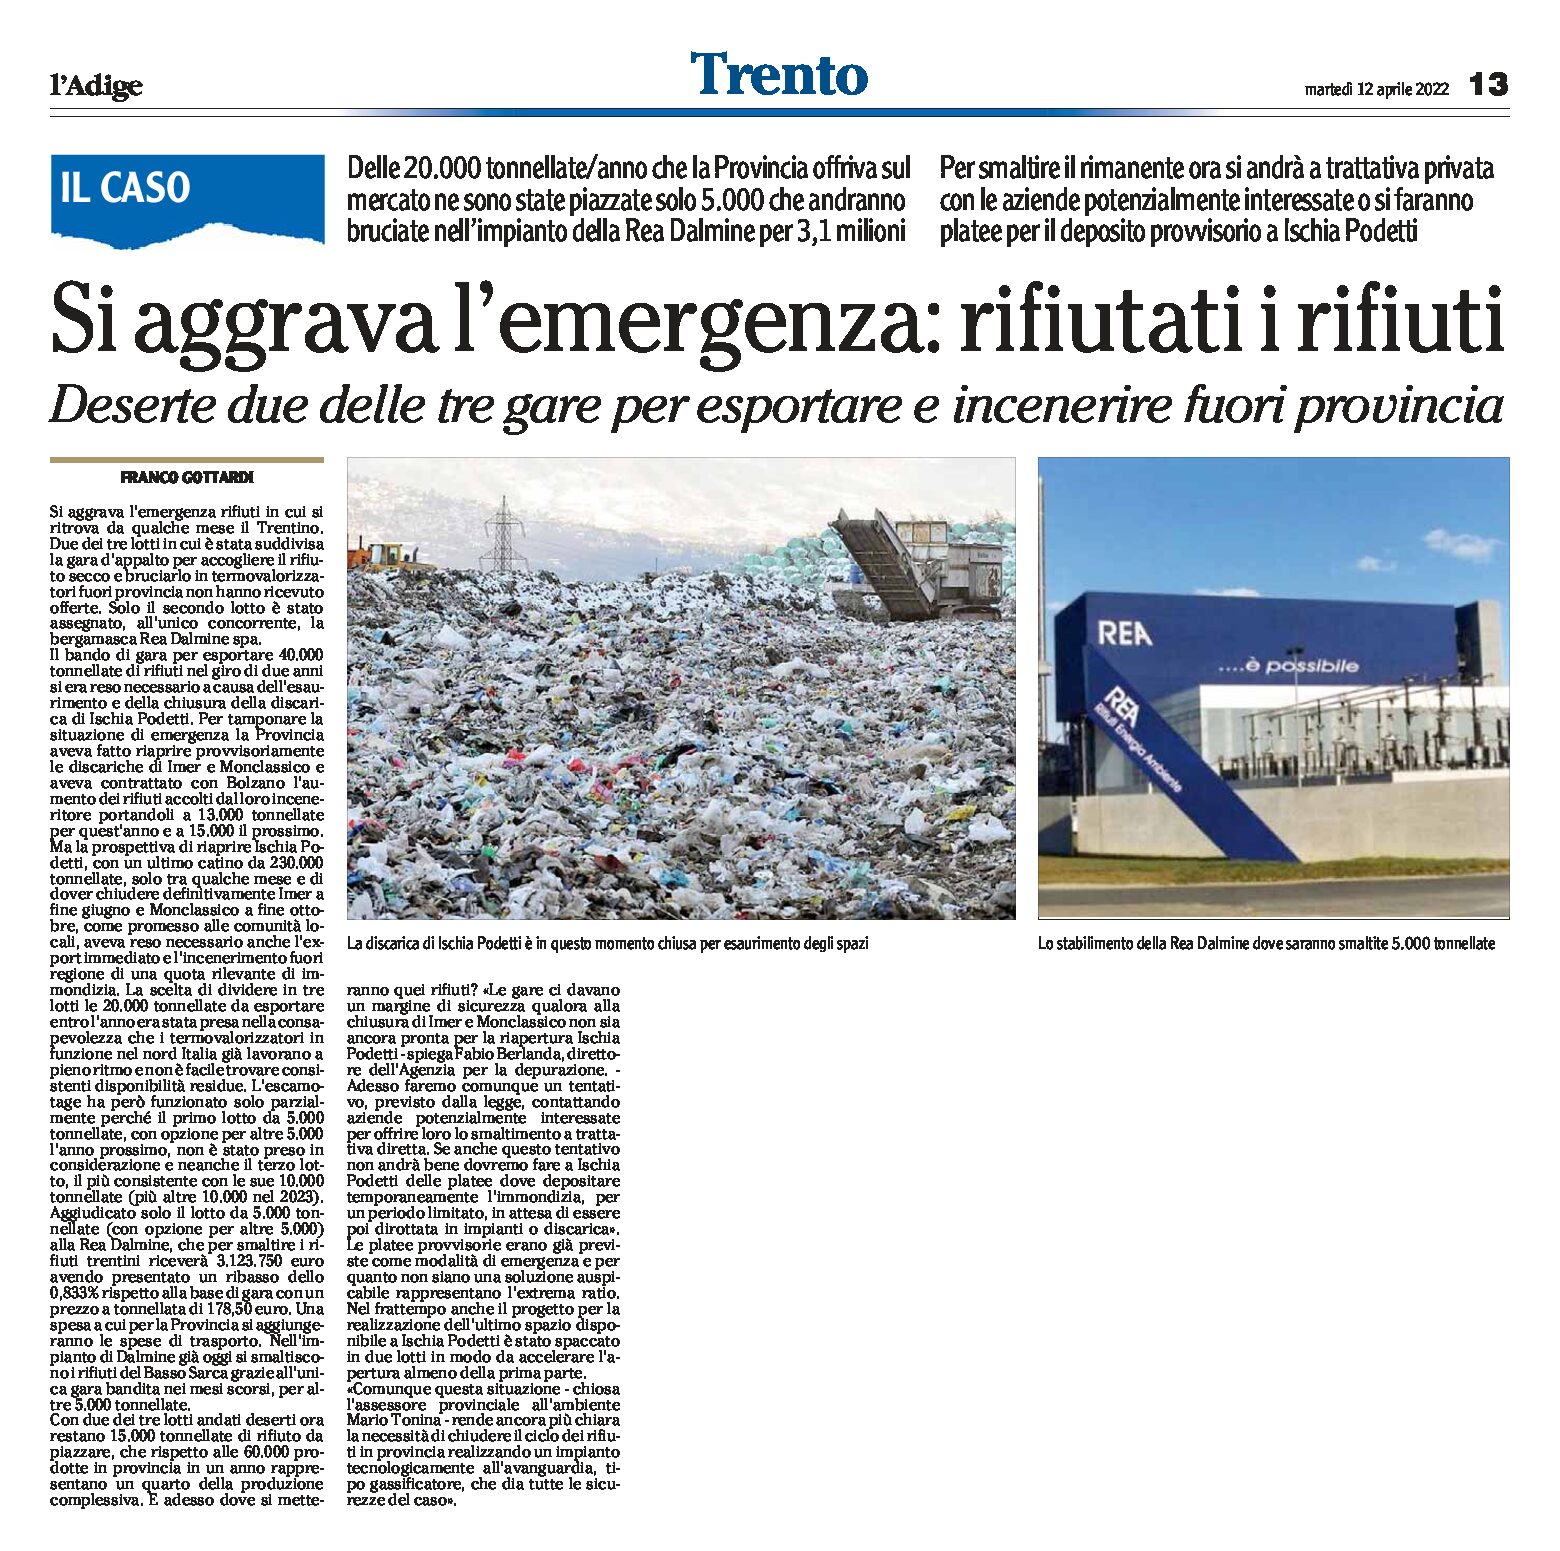 Trentino, si aggrava l’emergenza: rifiutati i rifiuti